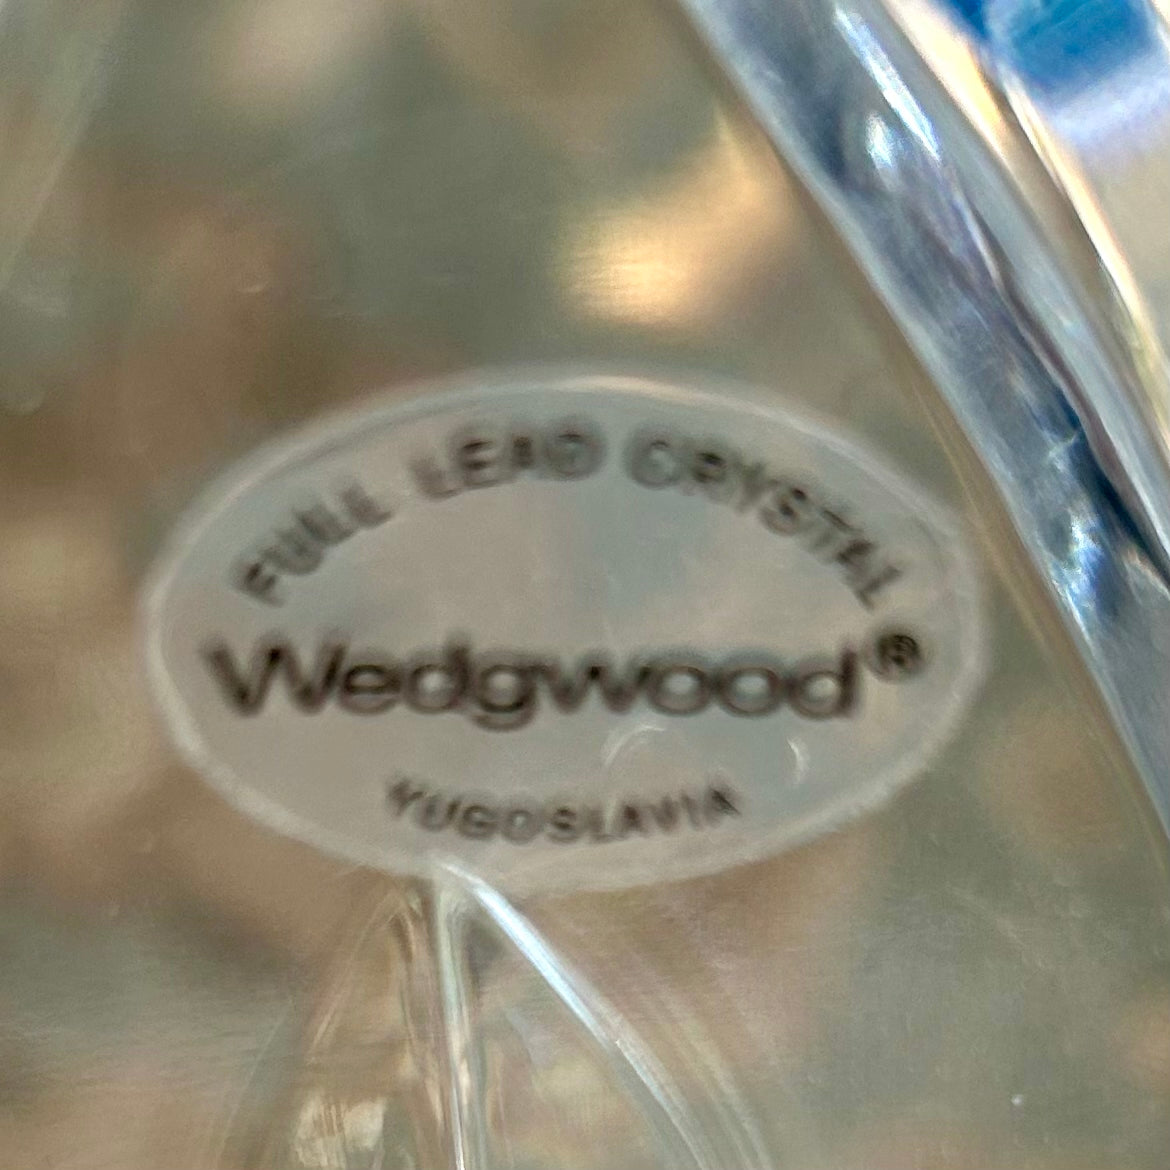 Sparkling vintage scalloped large designer Wedgwood crystal centerpiece bowl.